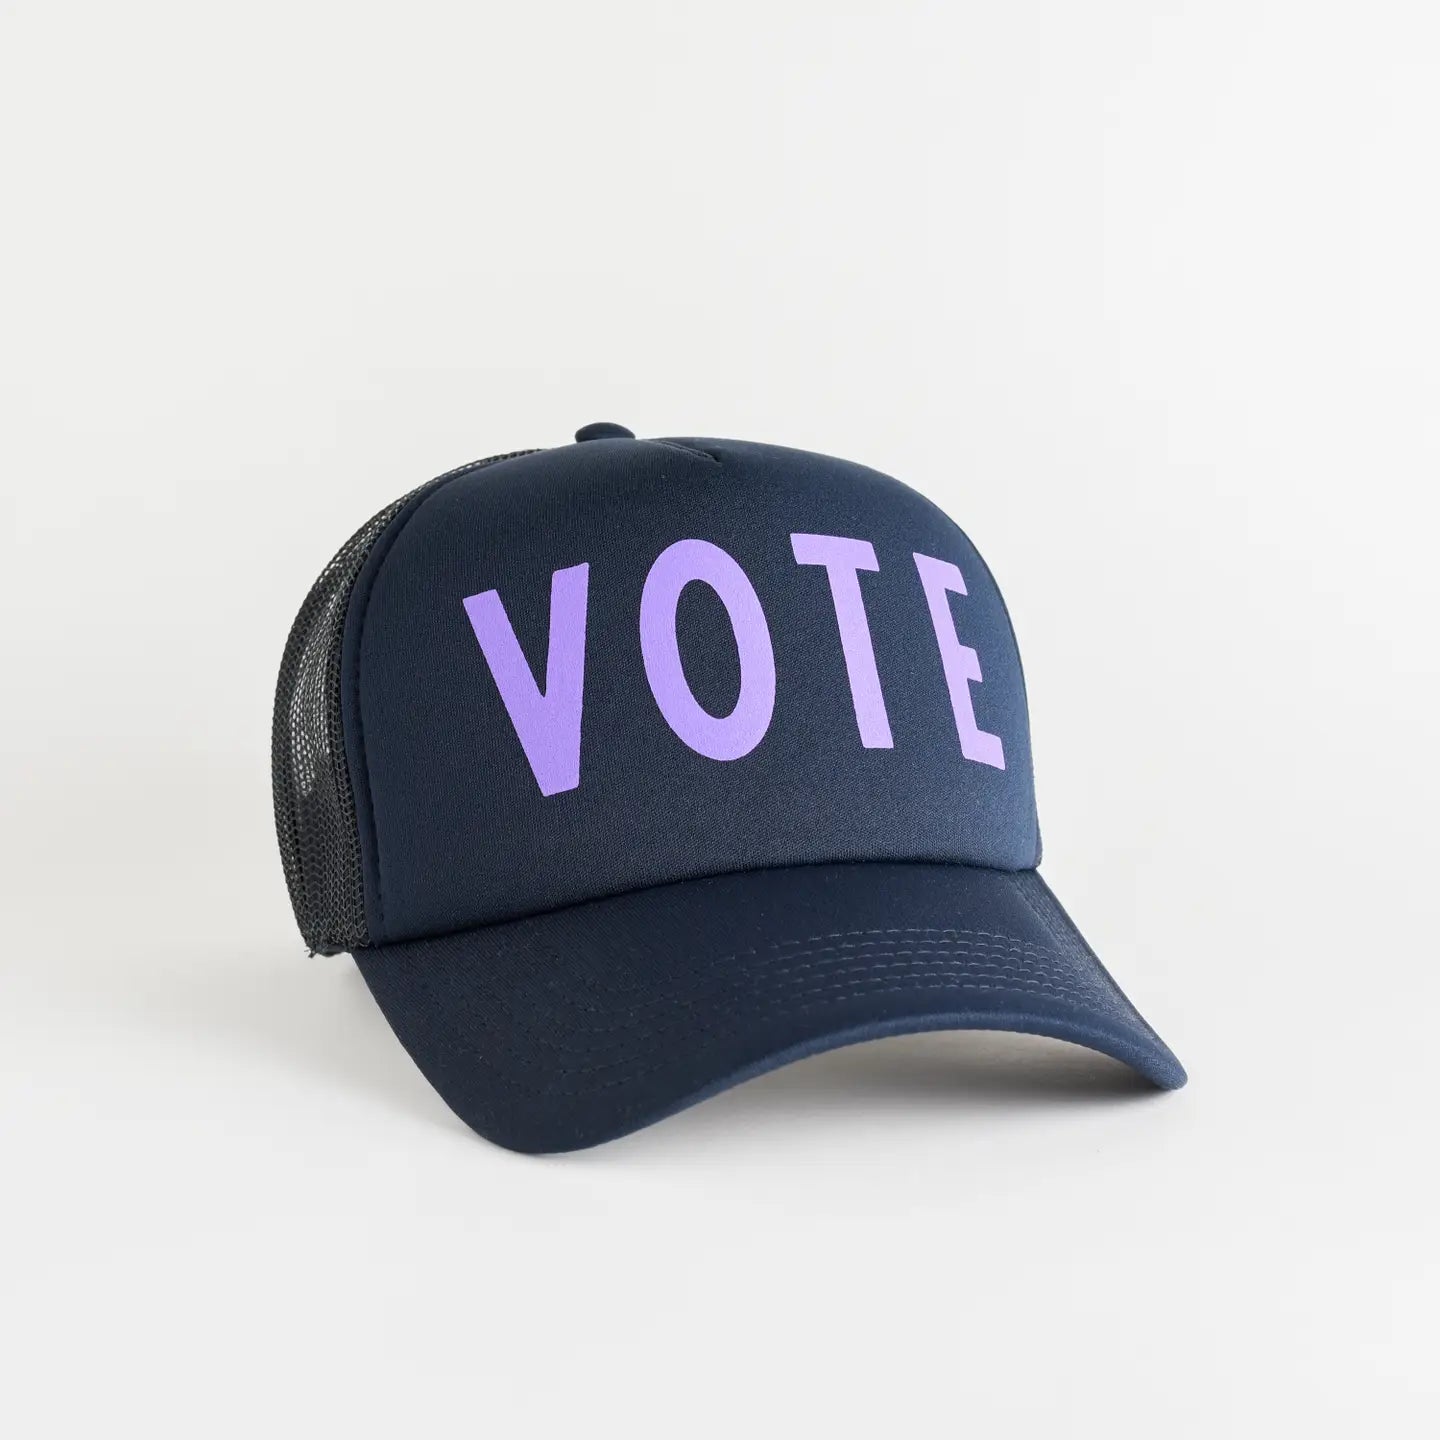 vote trucker hat